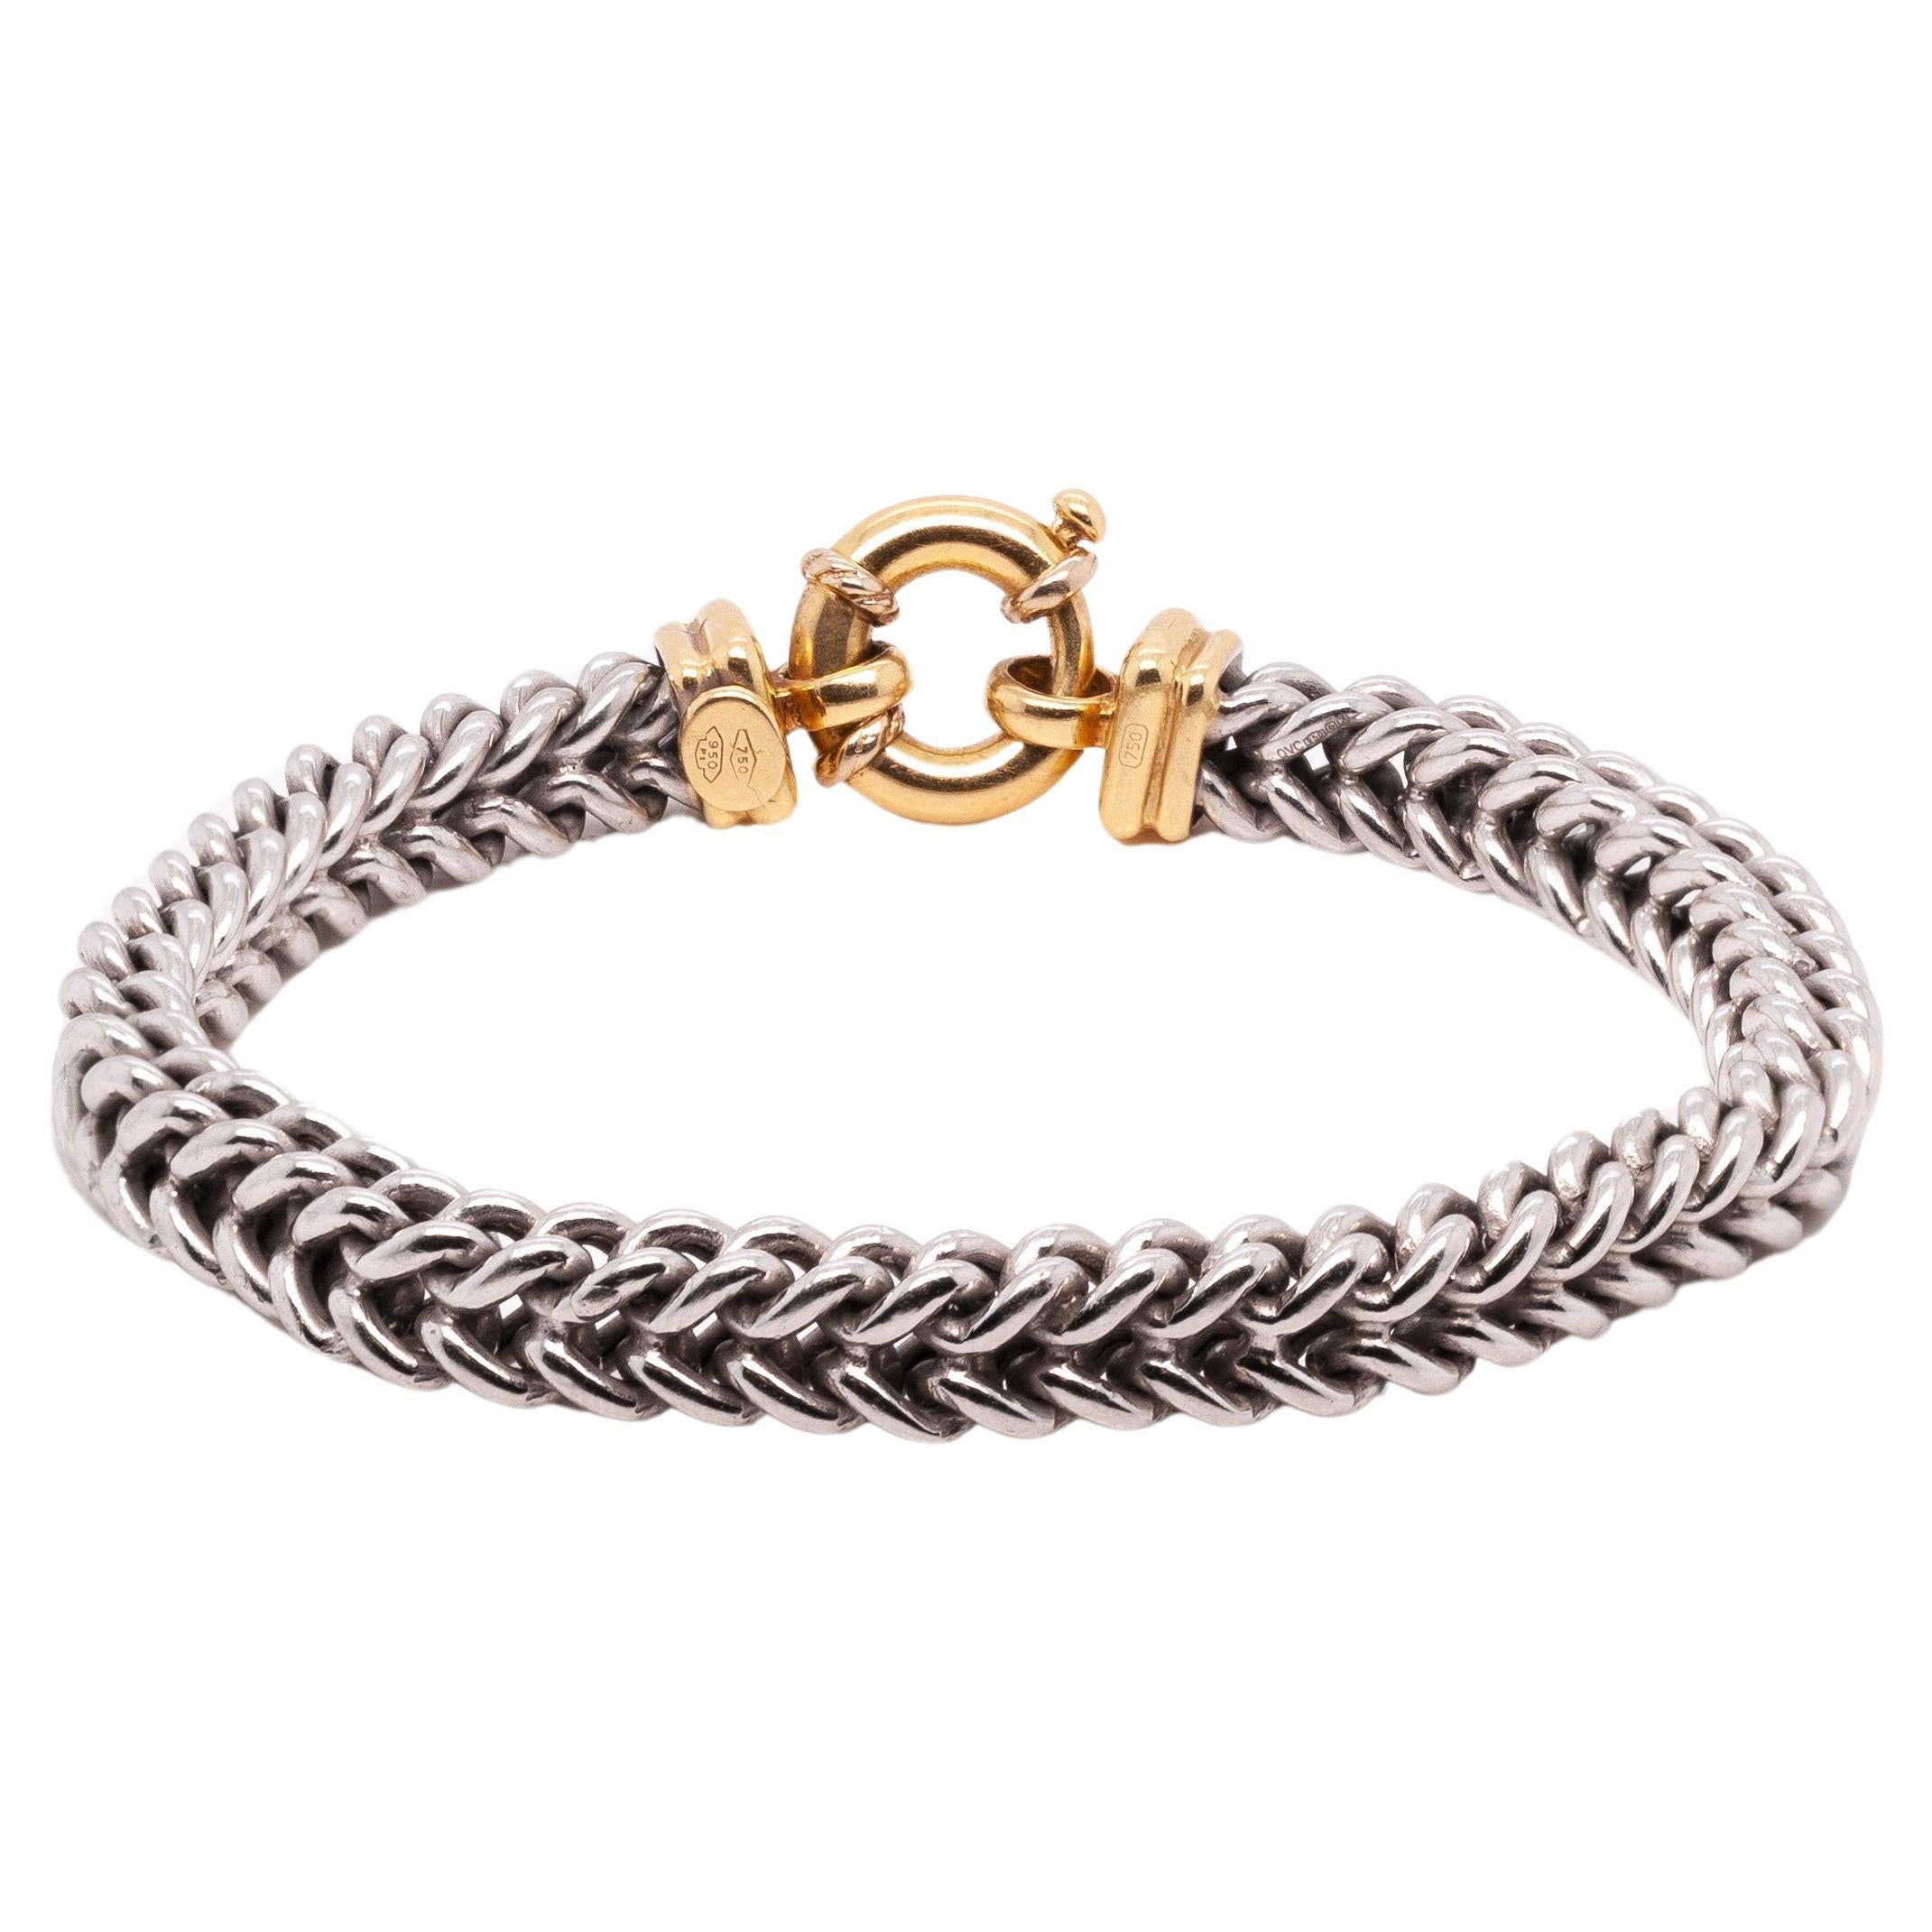 Fabriqué par des experts, ce fantastique bracelet à maillons allie harmonieusement la beauté classique du platine à la riche couleur de l'or jaune 18 carats. Une pièce indispensable pour toutes les amoureuses de bijoux, qui peut être portée seule ou